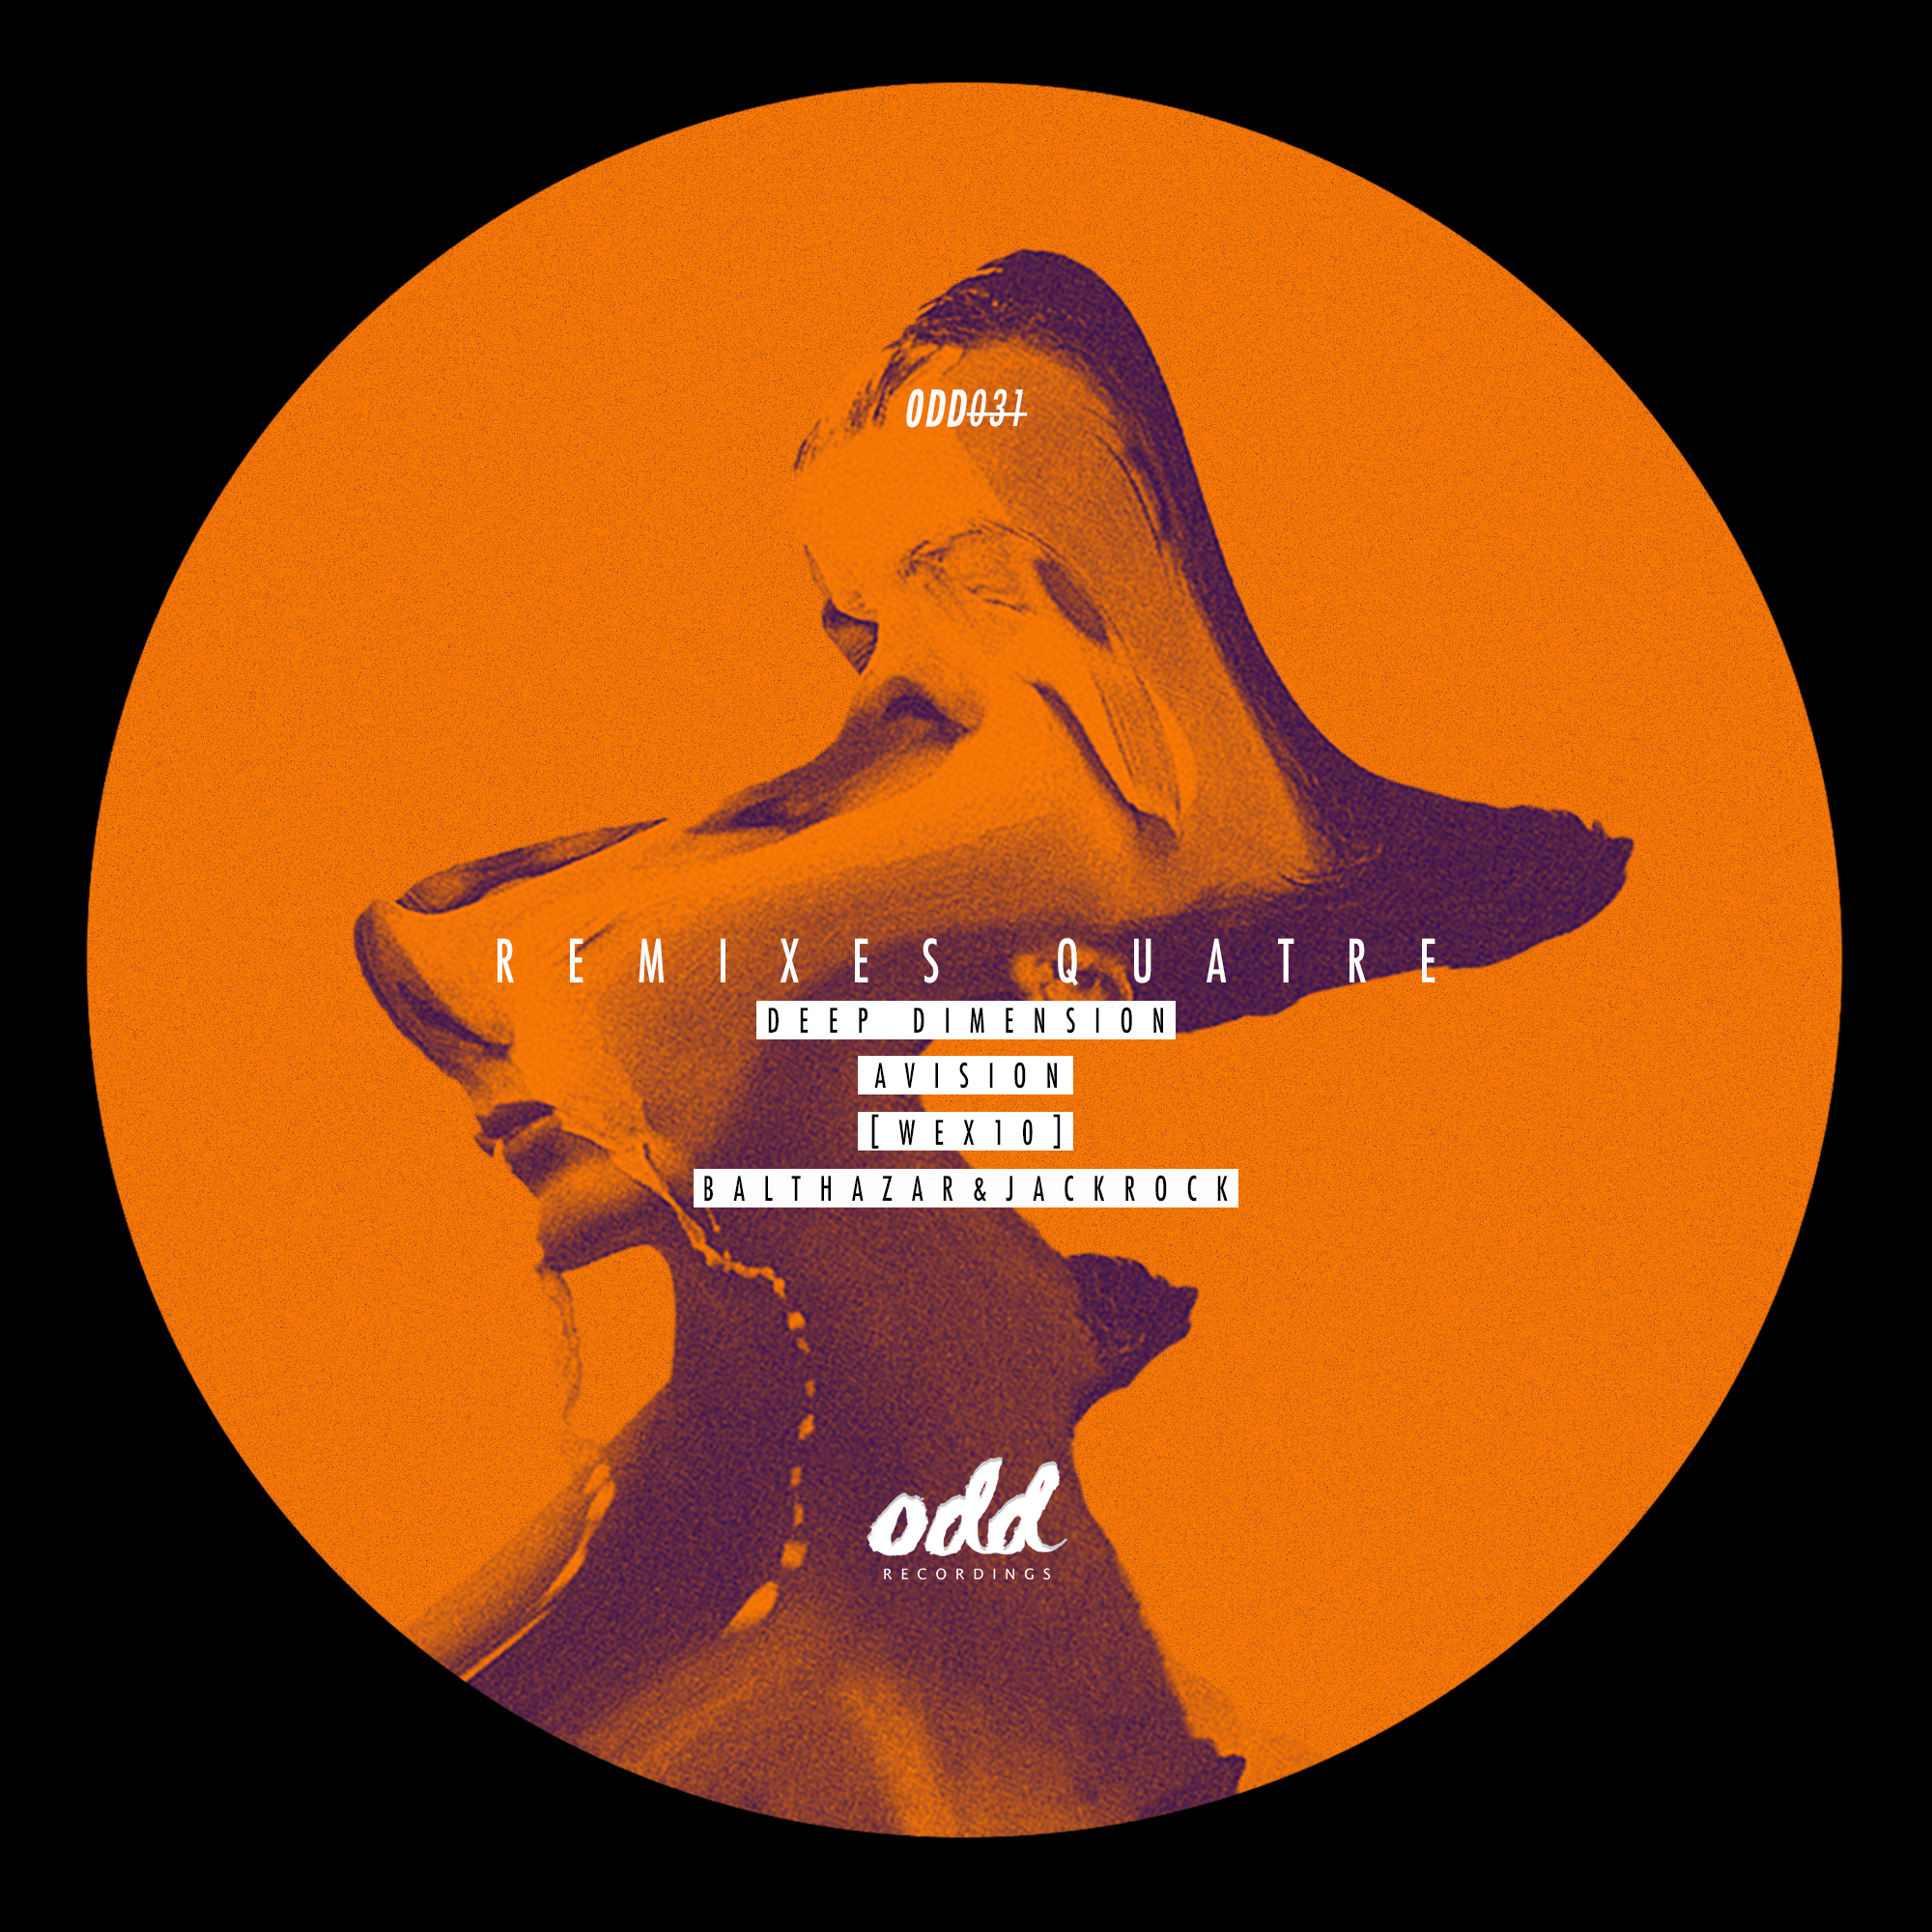 ODD031 - Various - Remixes Quatre